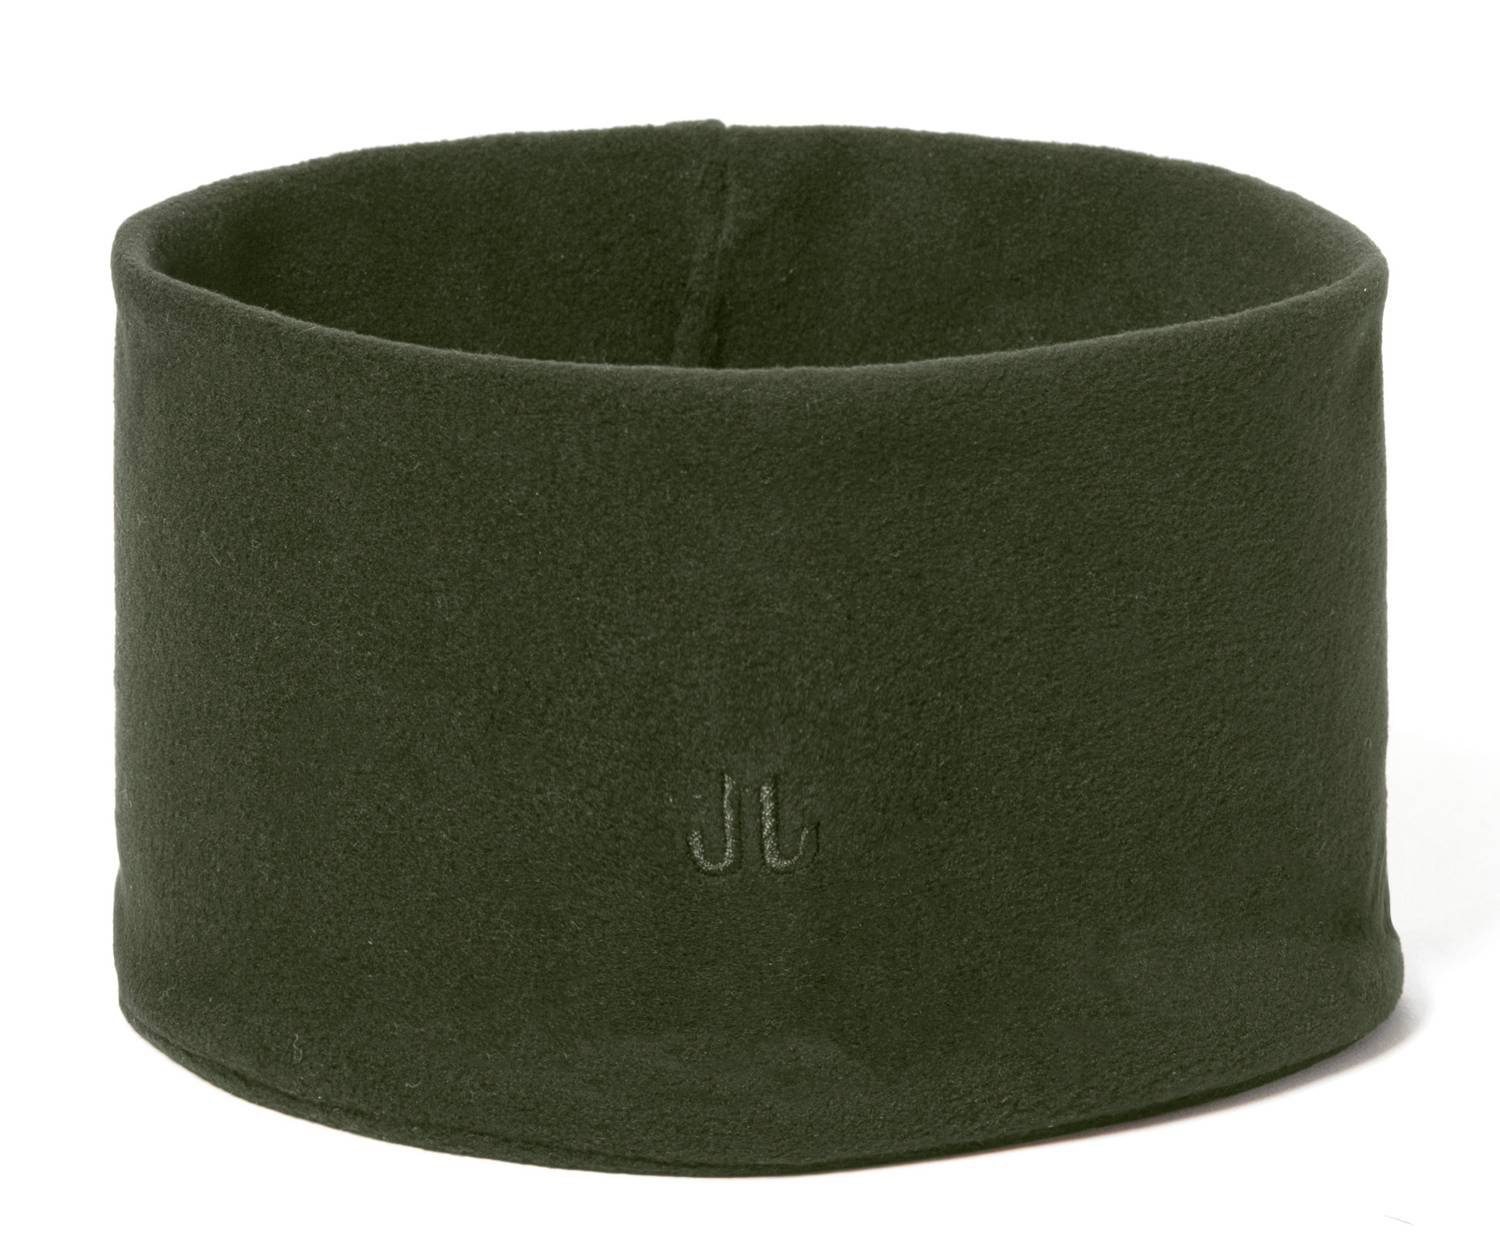 Jail Jam Stirnband Sportliches Stirnband doppellagig aus Unisex Microfleece, Green